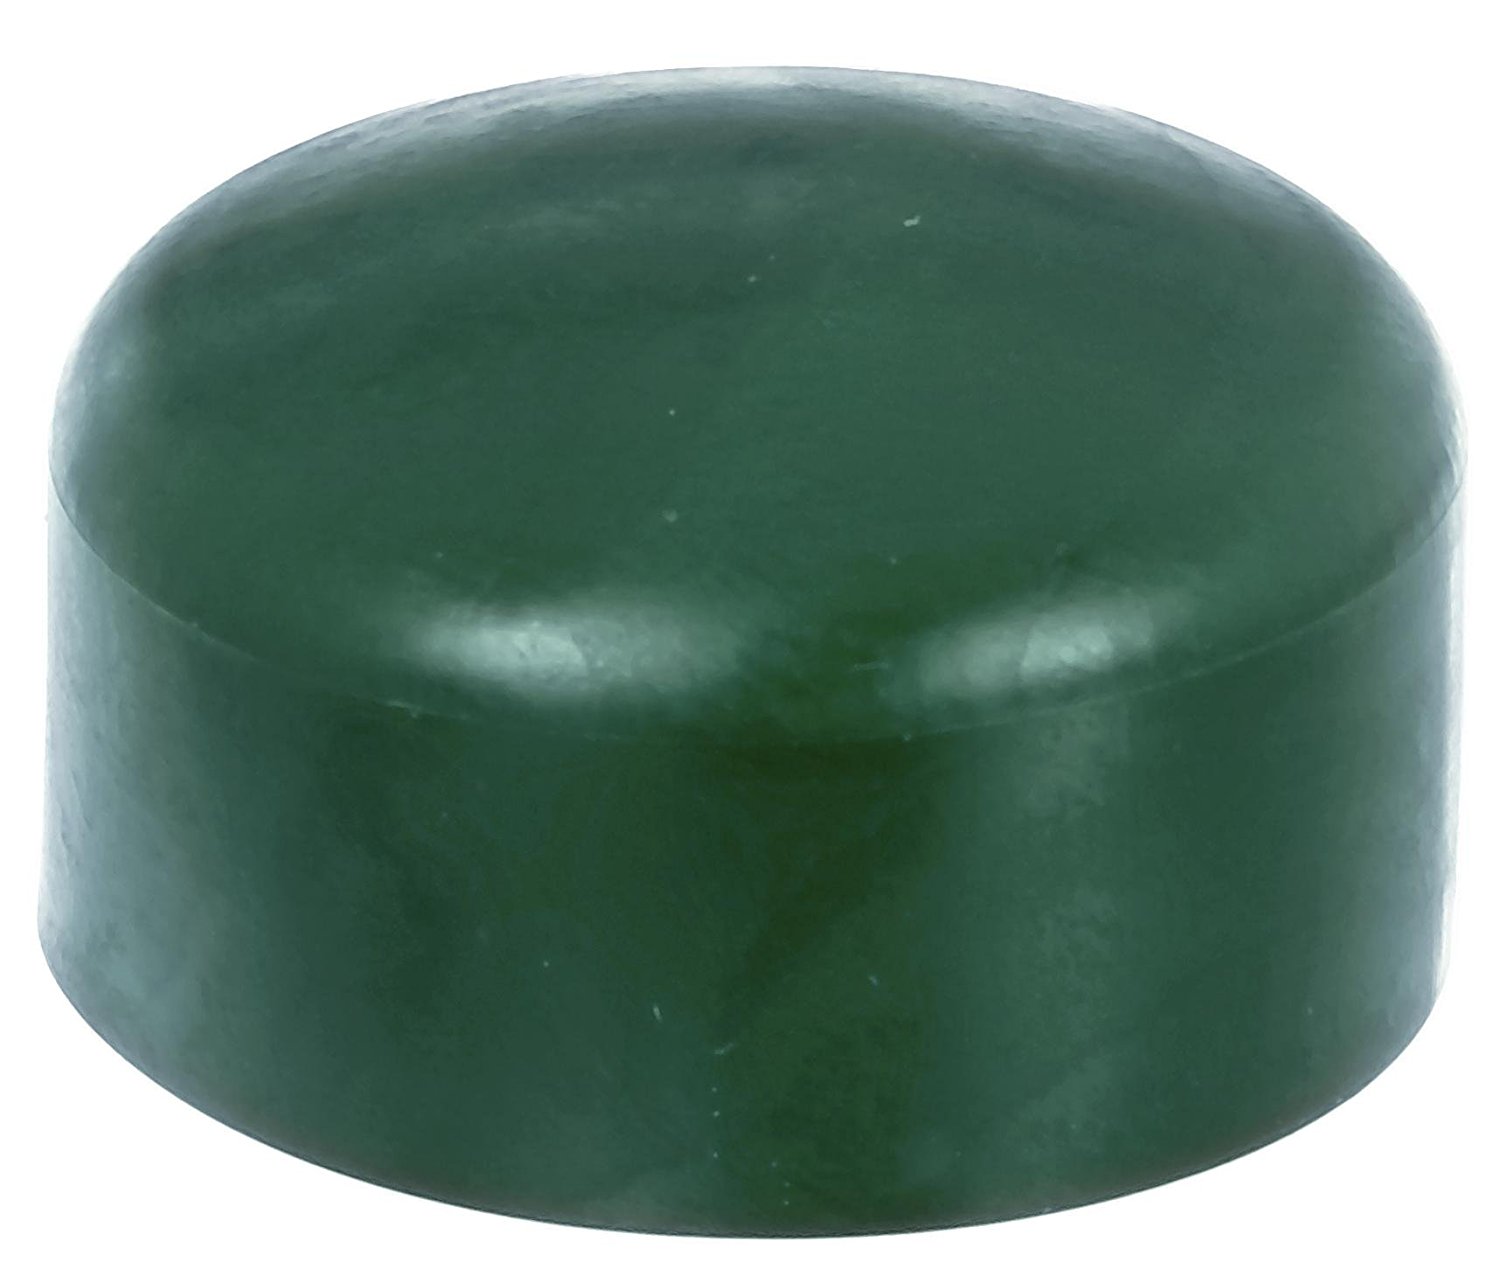 Zaunkappe grün 59-60 mm, Pfostenkappe für runde Metallpfosten, grün, Rohrkappen, Abdeckkappe für Zau